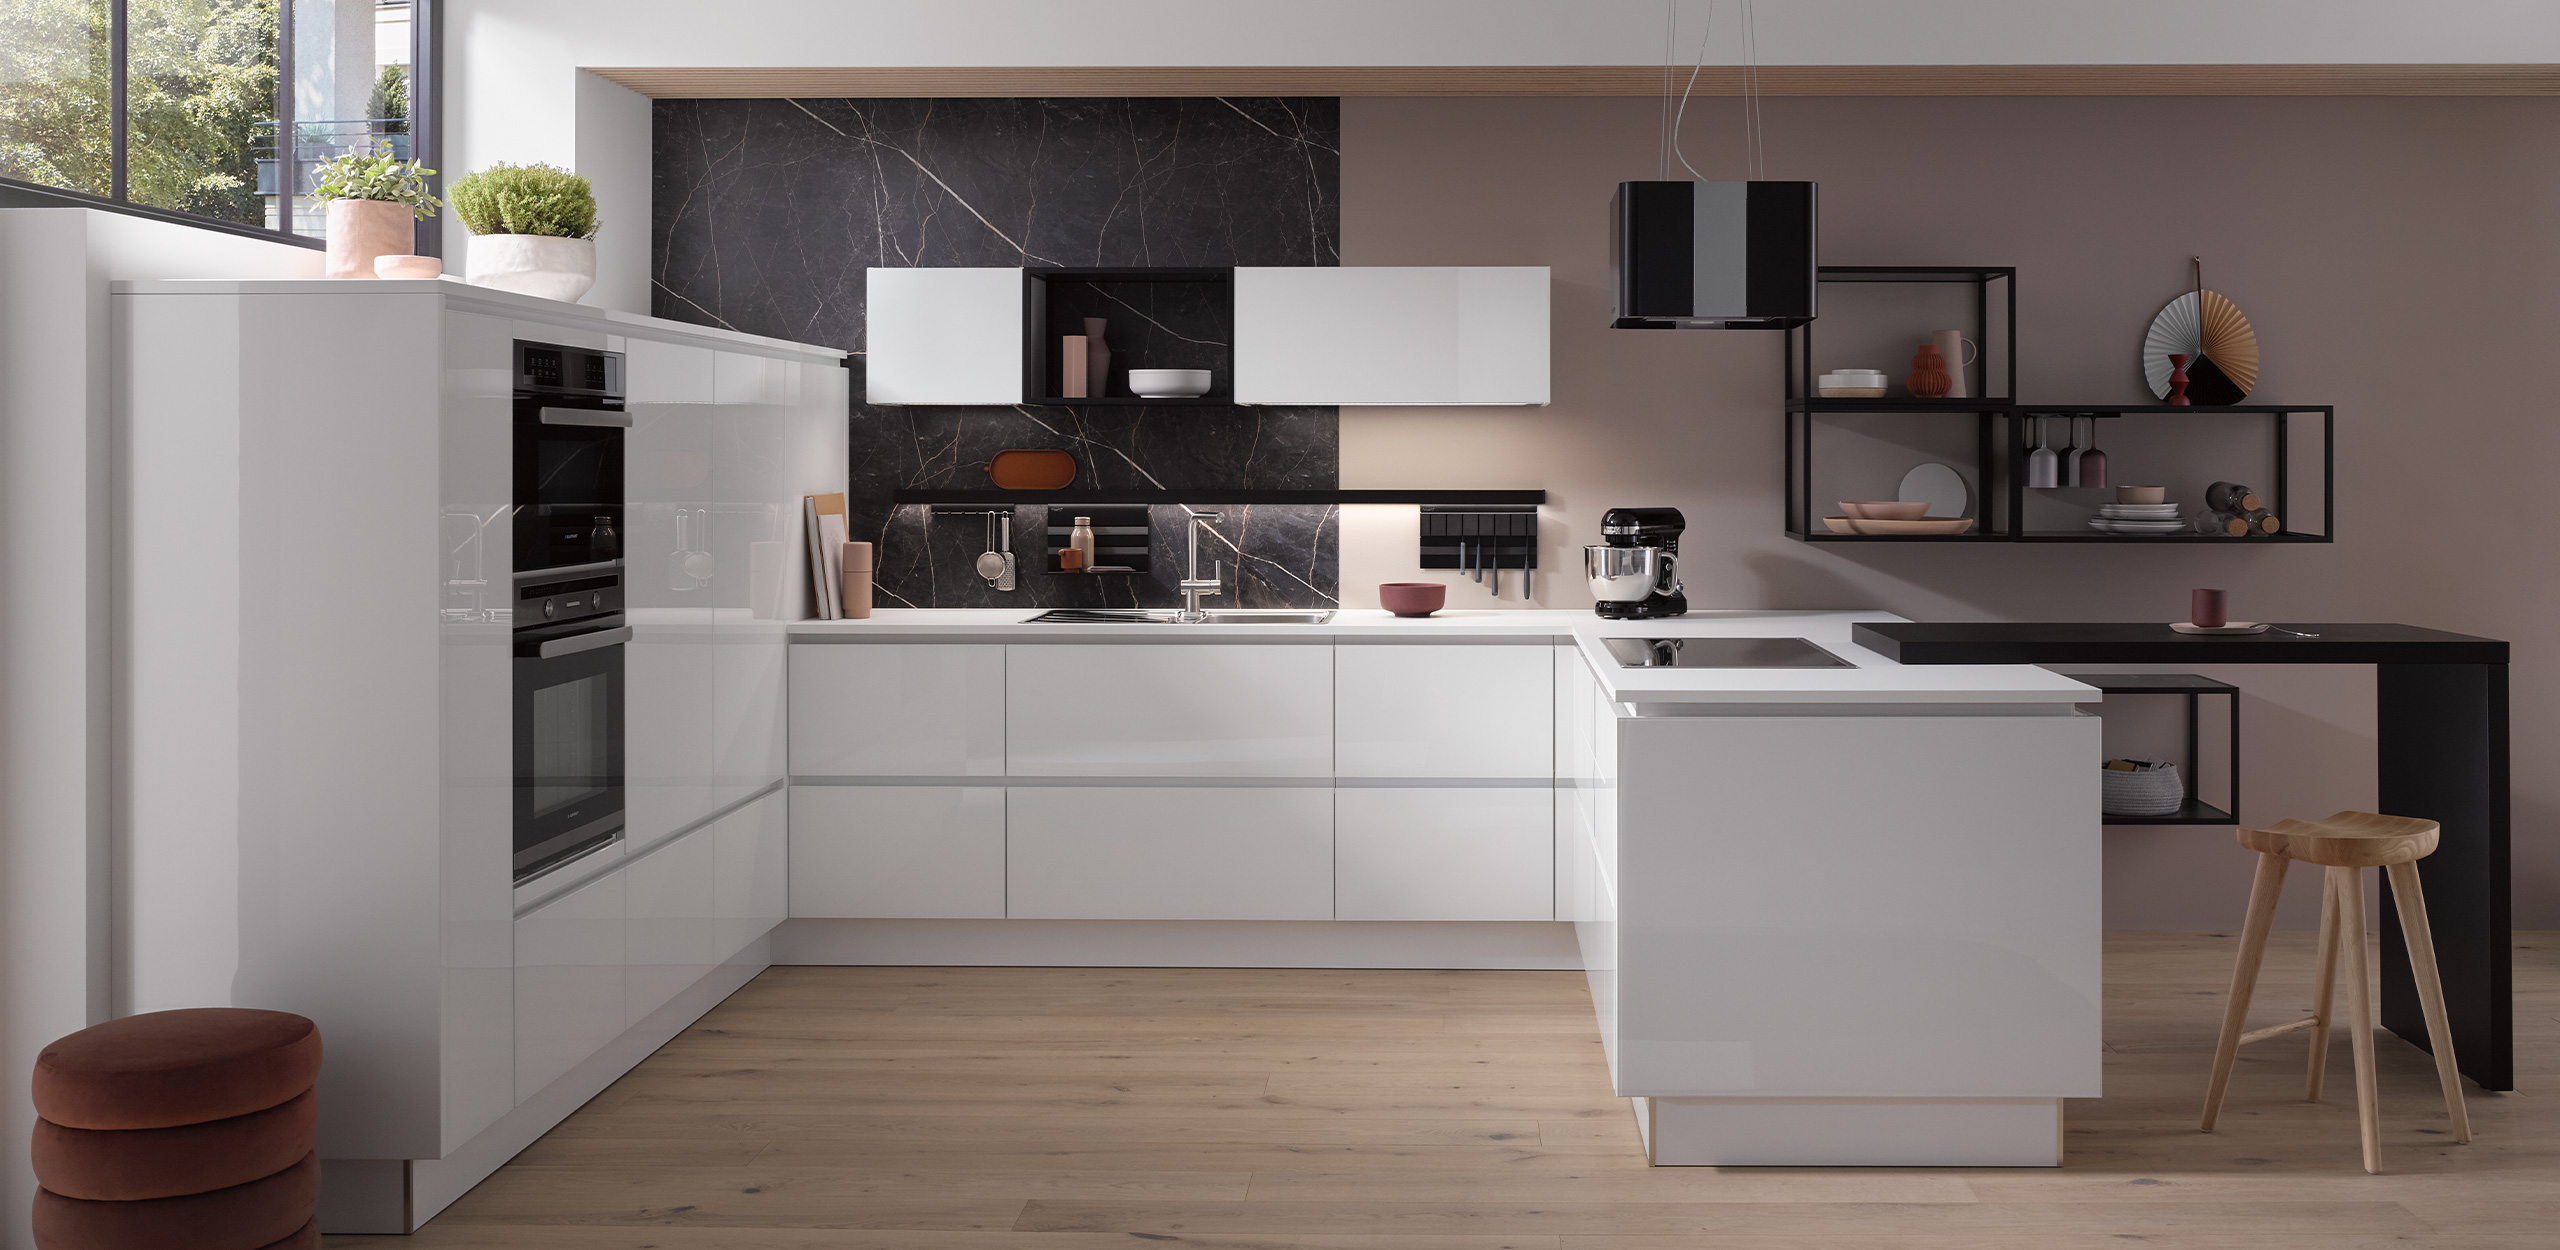 Vista general de la cocina MURANO BRILLANT-GL Crystal White con columnas, mueble de cocina, módulos murales y una estantería metálica acabada en mármol antracita